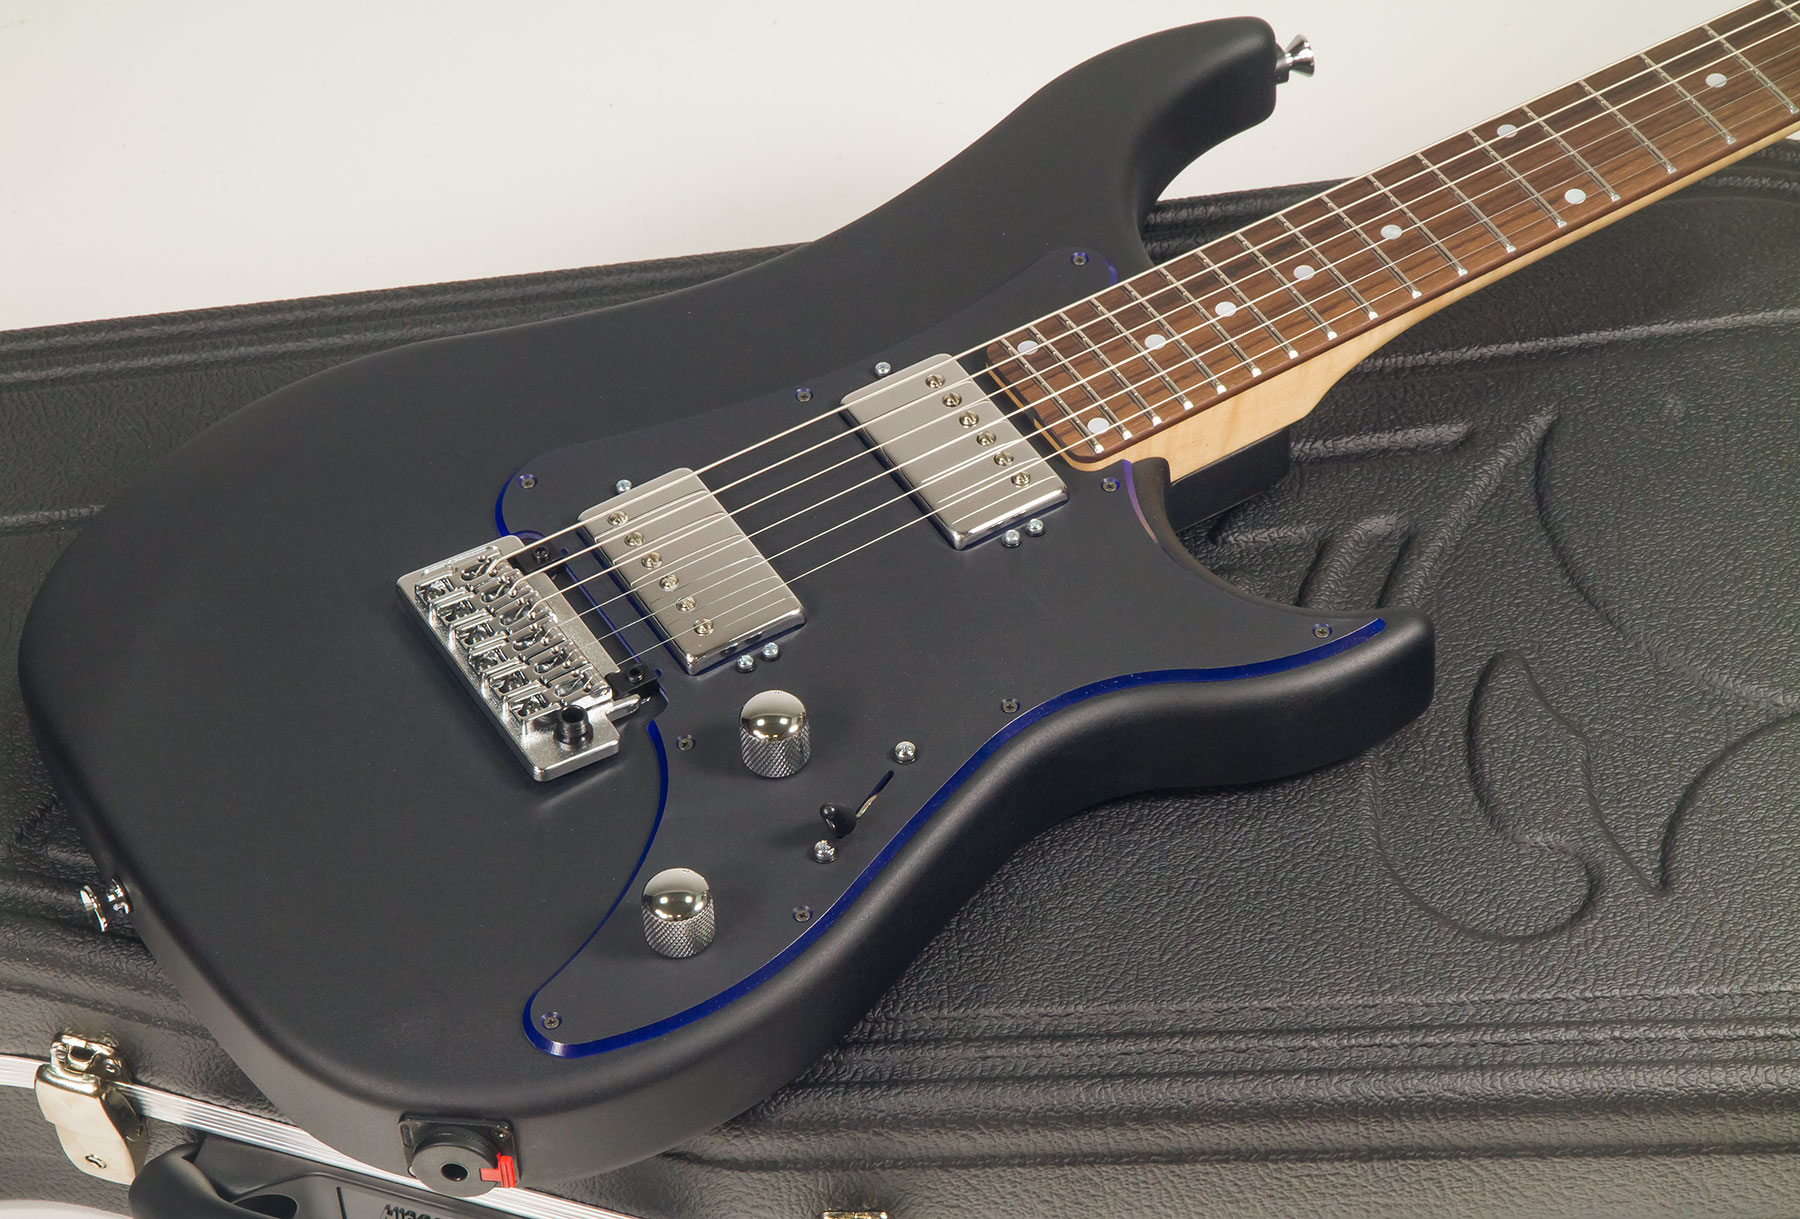 Vigier Excalibur Indus Hh Trem Rw - Textured Black - Double cut electric guitar - Variation 1